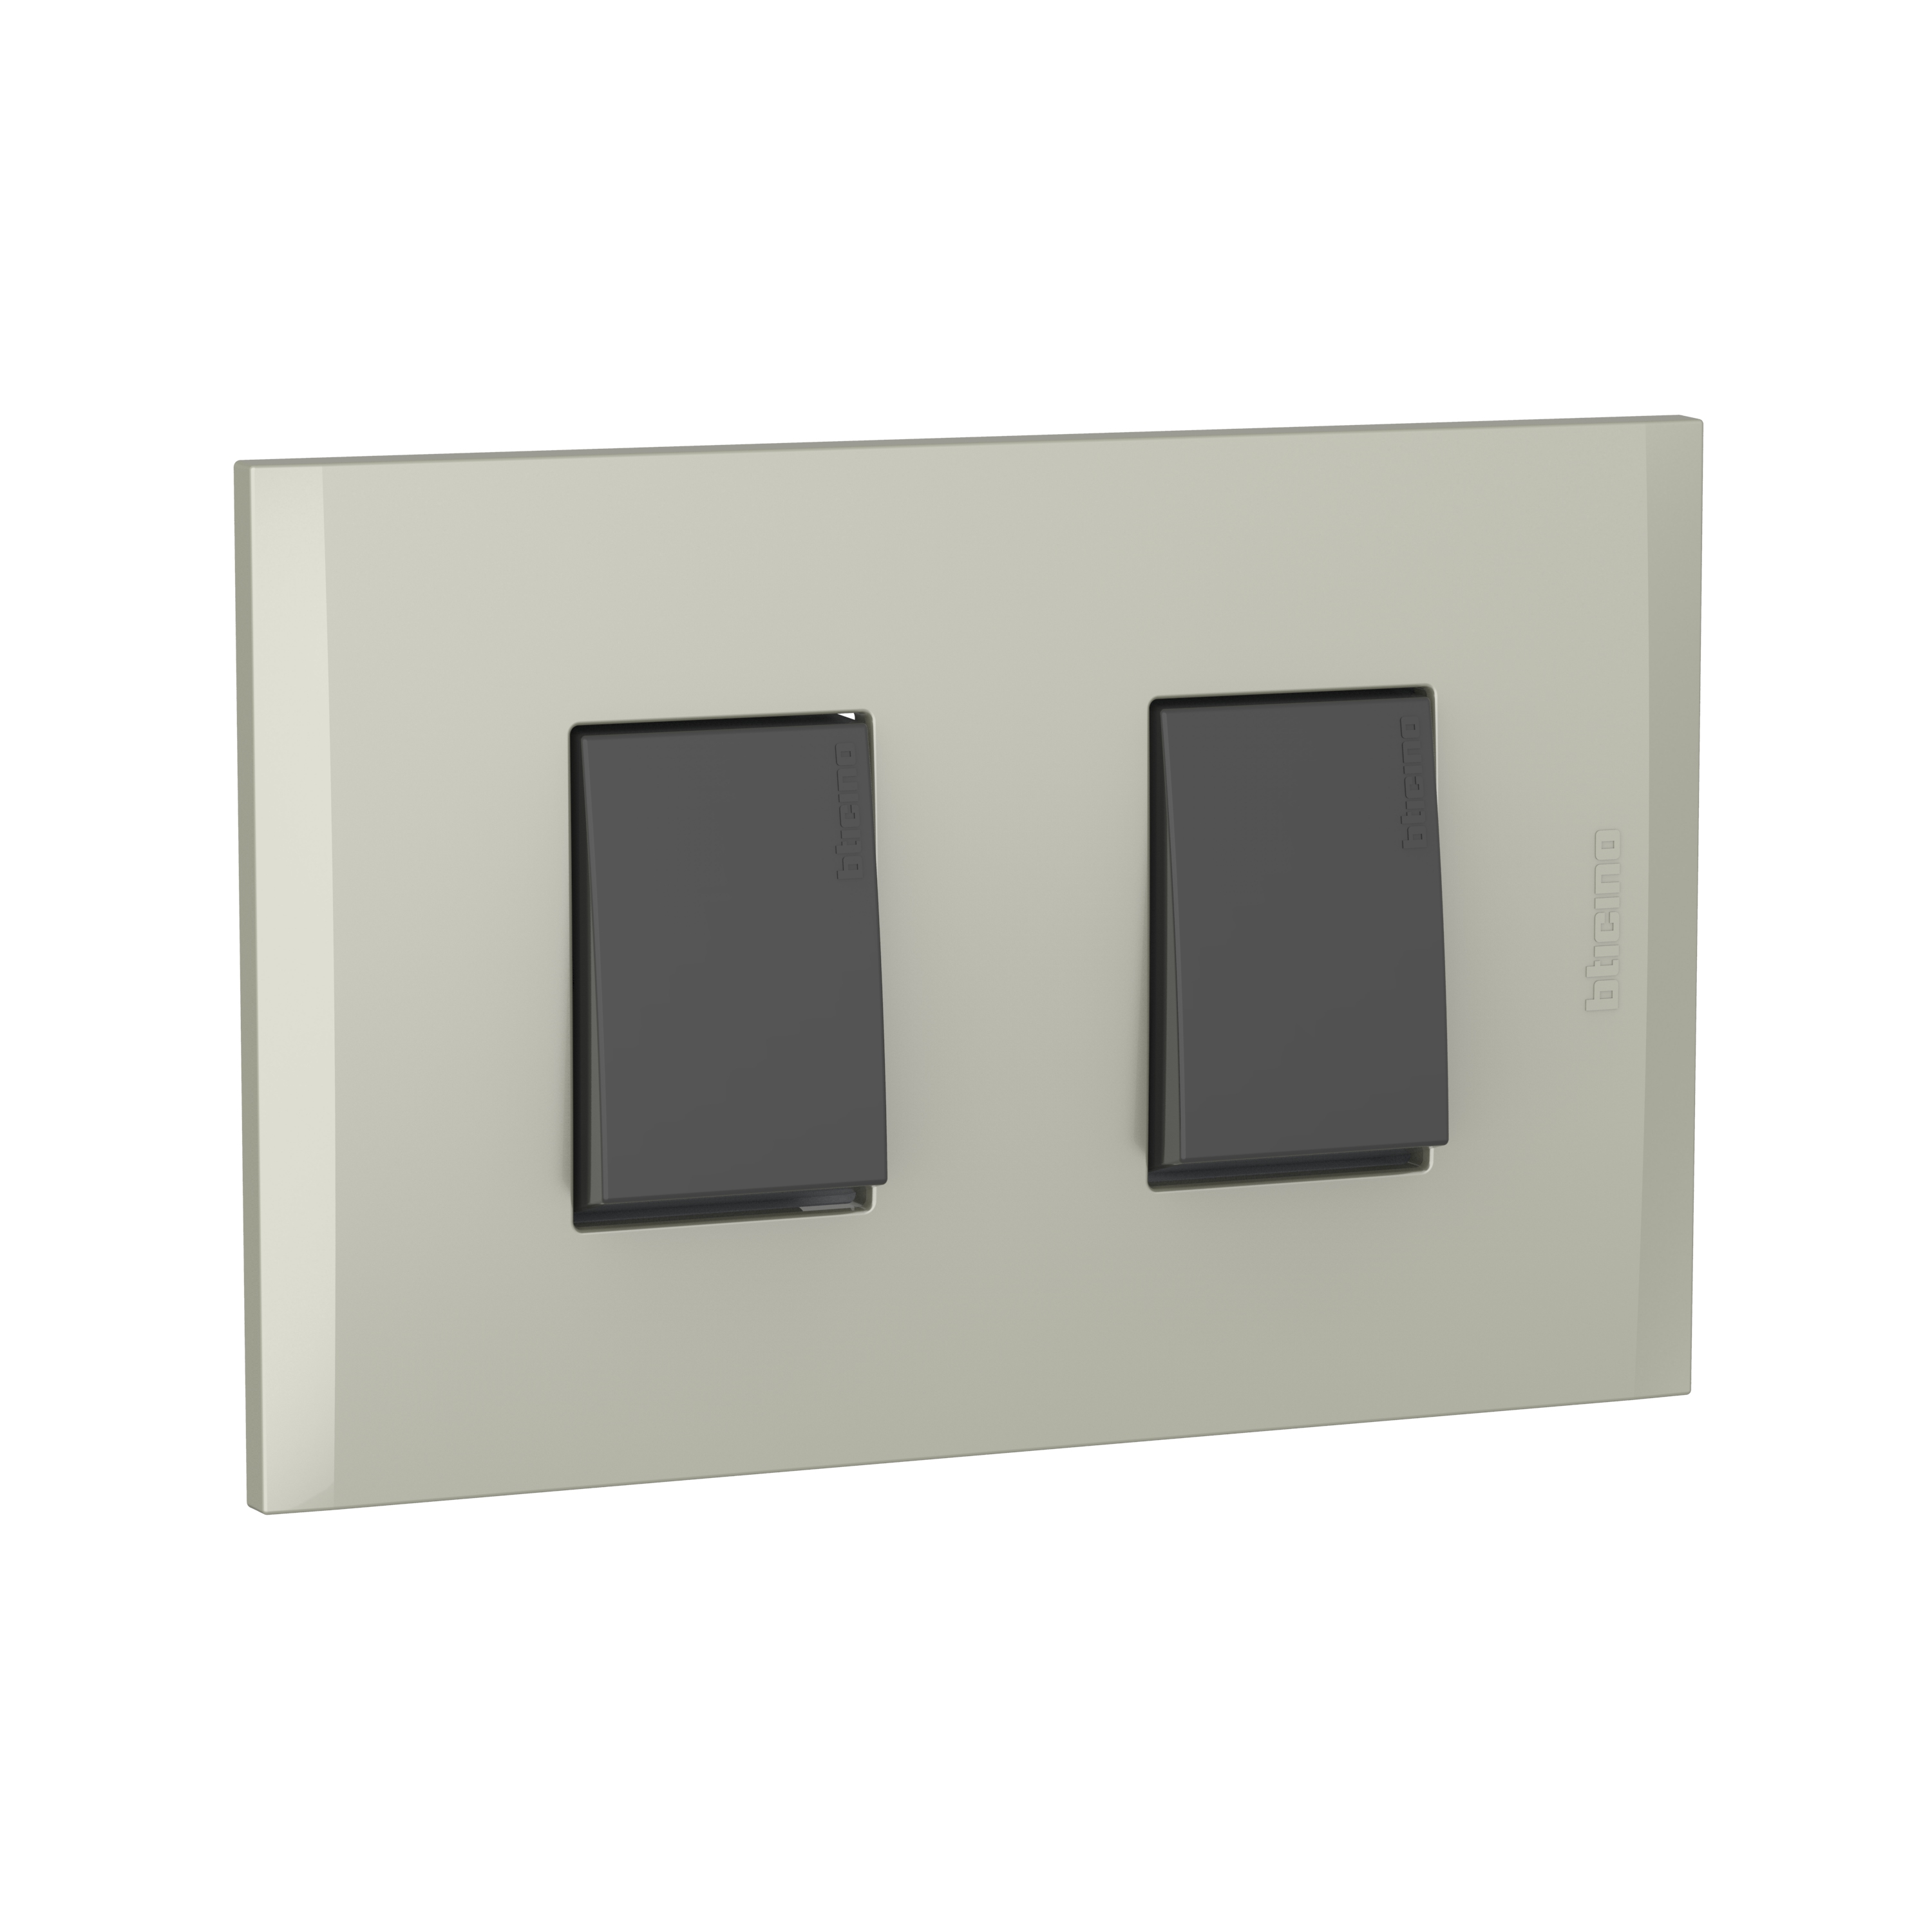 Placas e interruptores de Legrand / Bticino